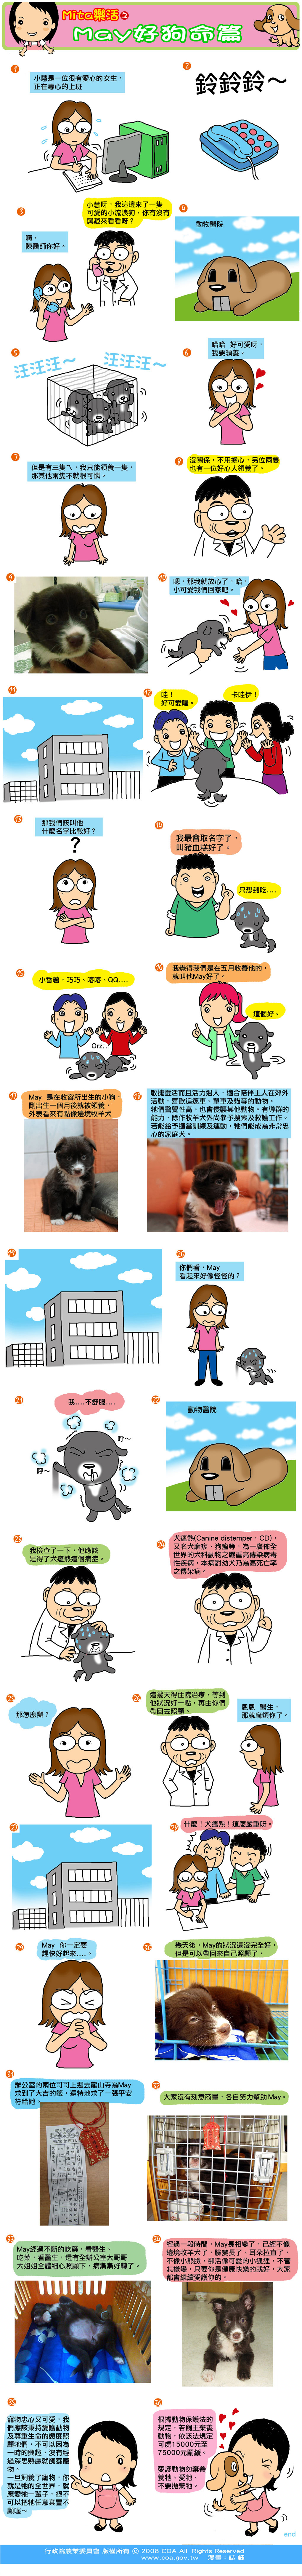 這是一篇關於Mita樂活之May好狗命篇主題的漫畫，詳細內容可參考下方詳細說明